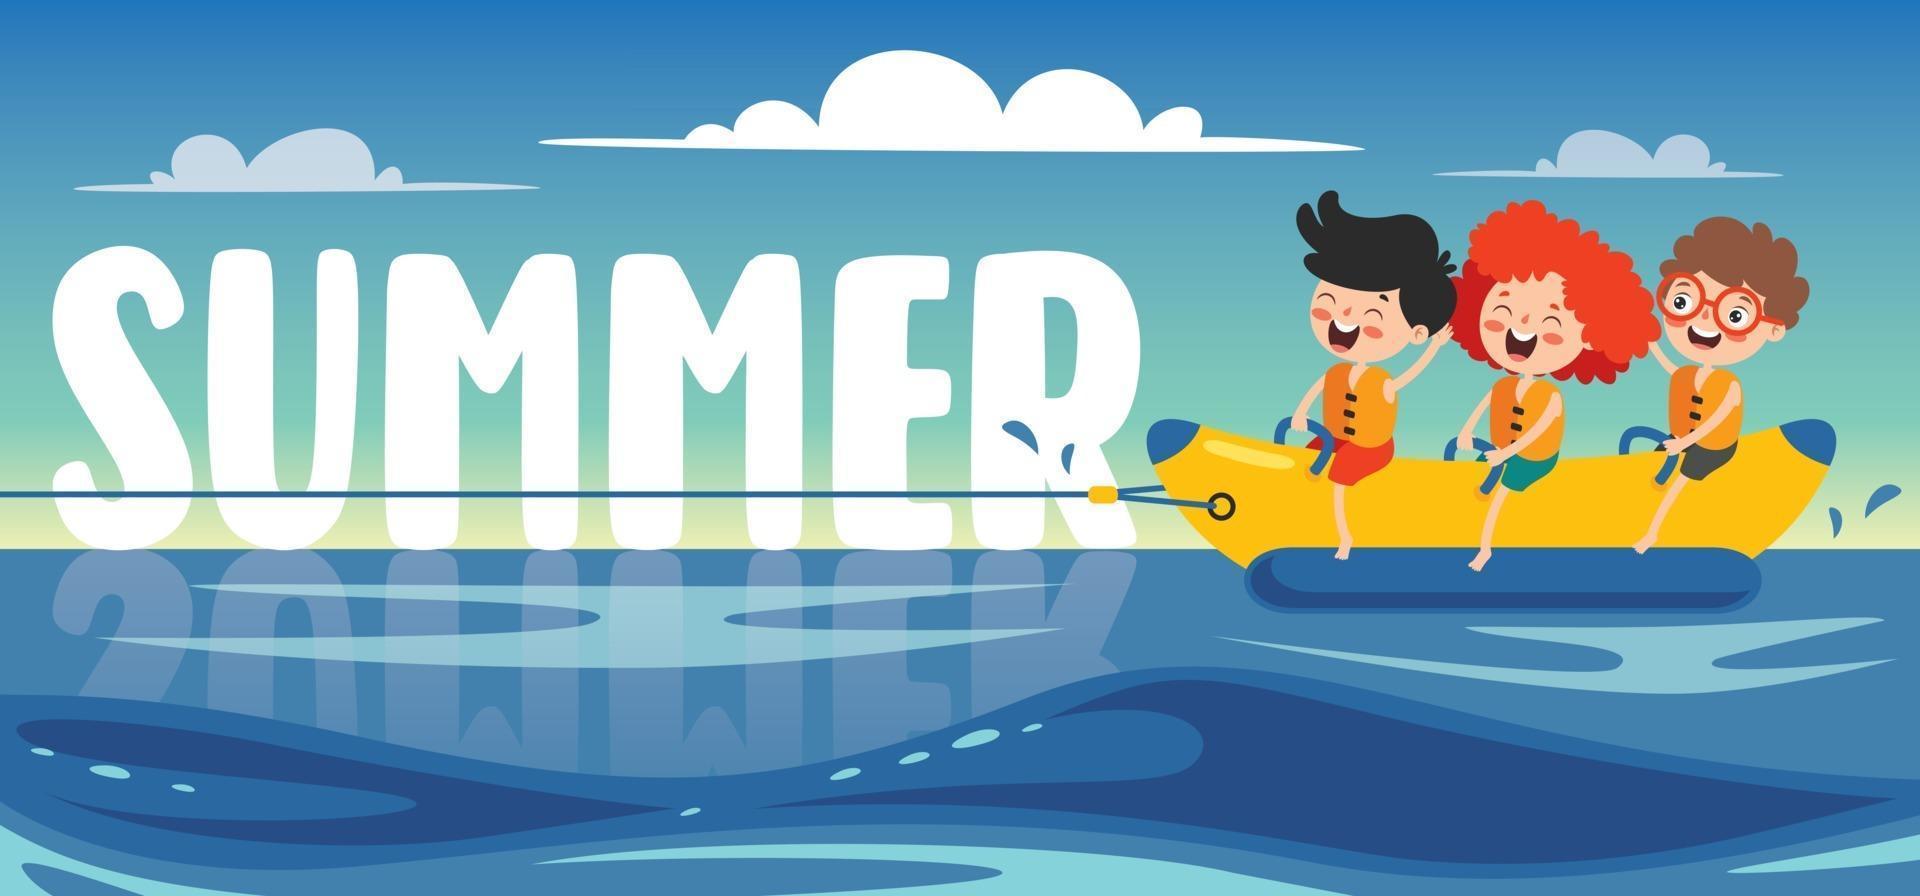 banner de verano plano con personaje de dibujos animados vector